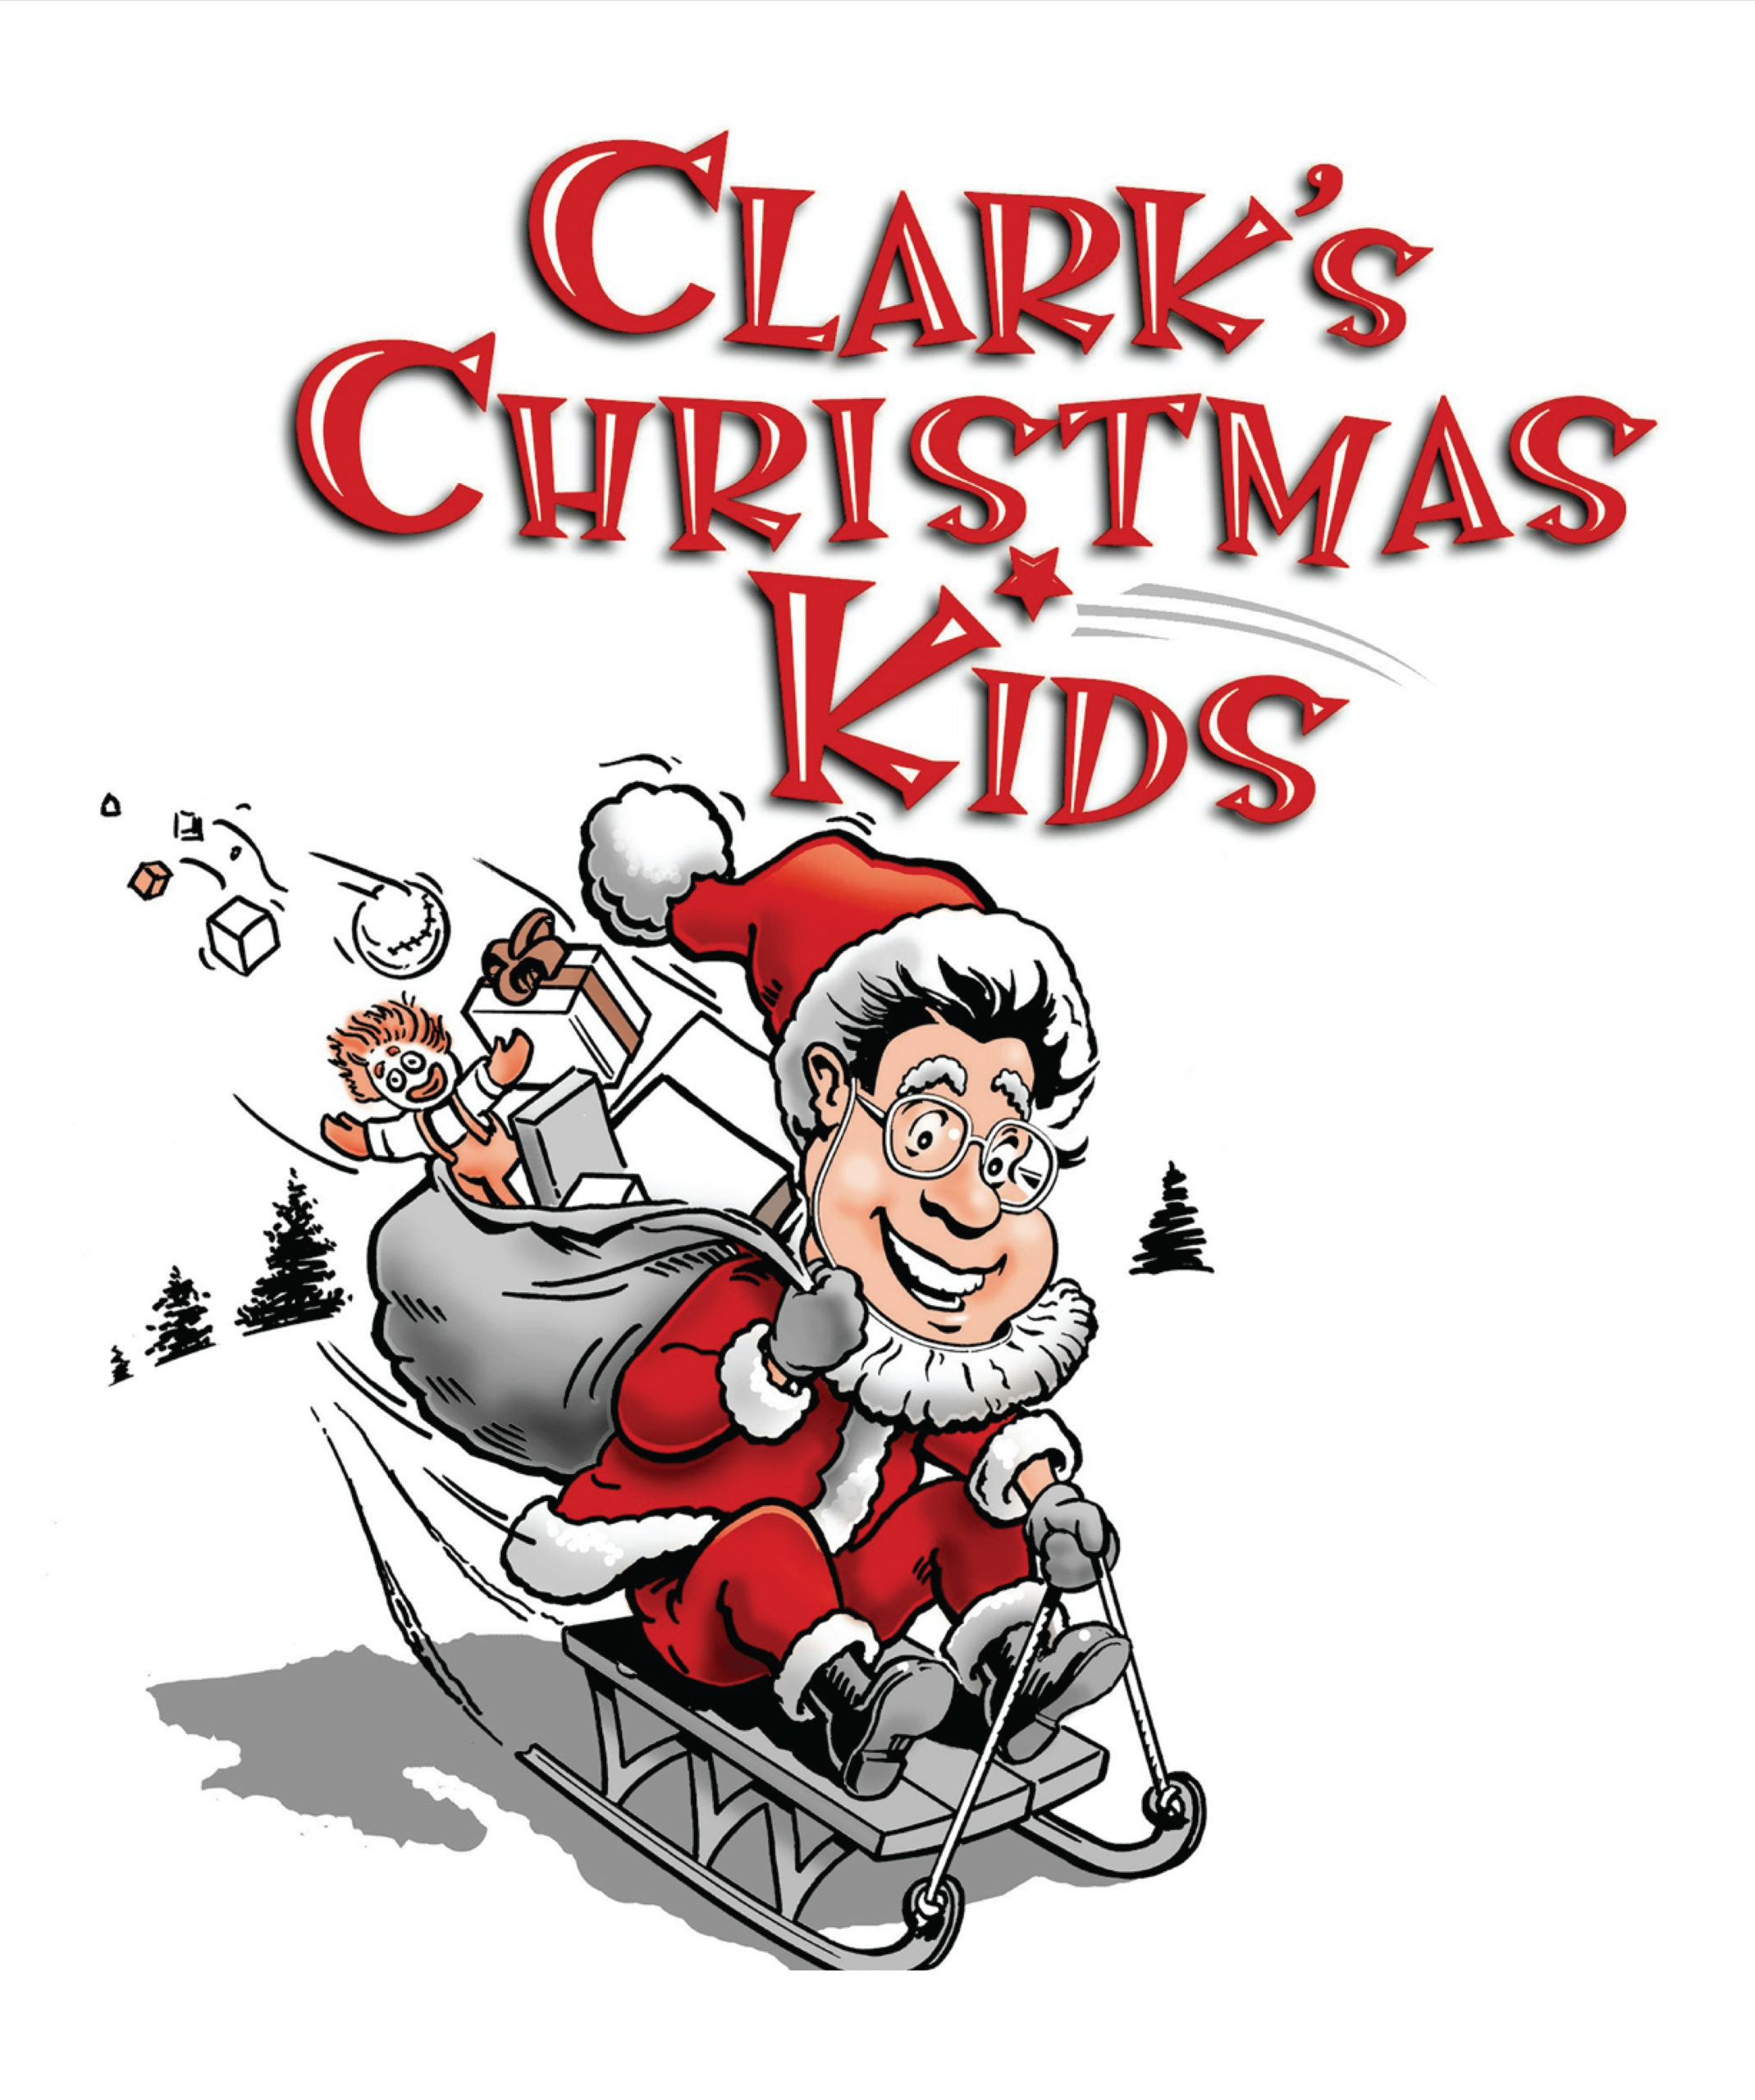 clarks christmas returns